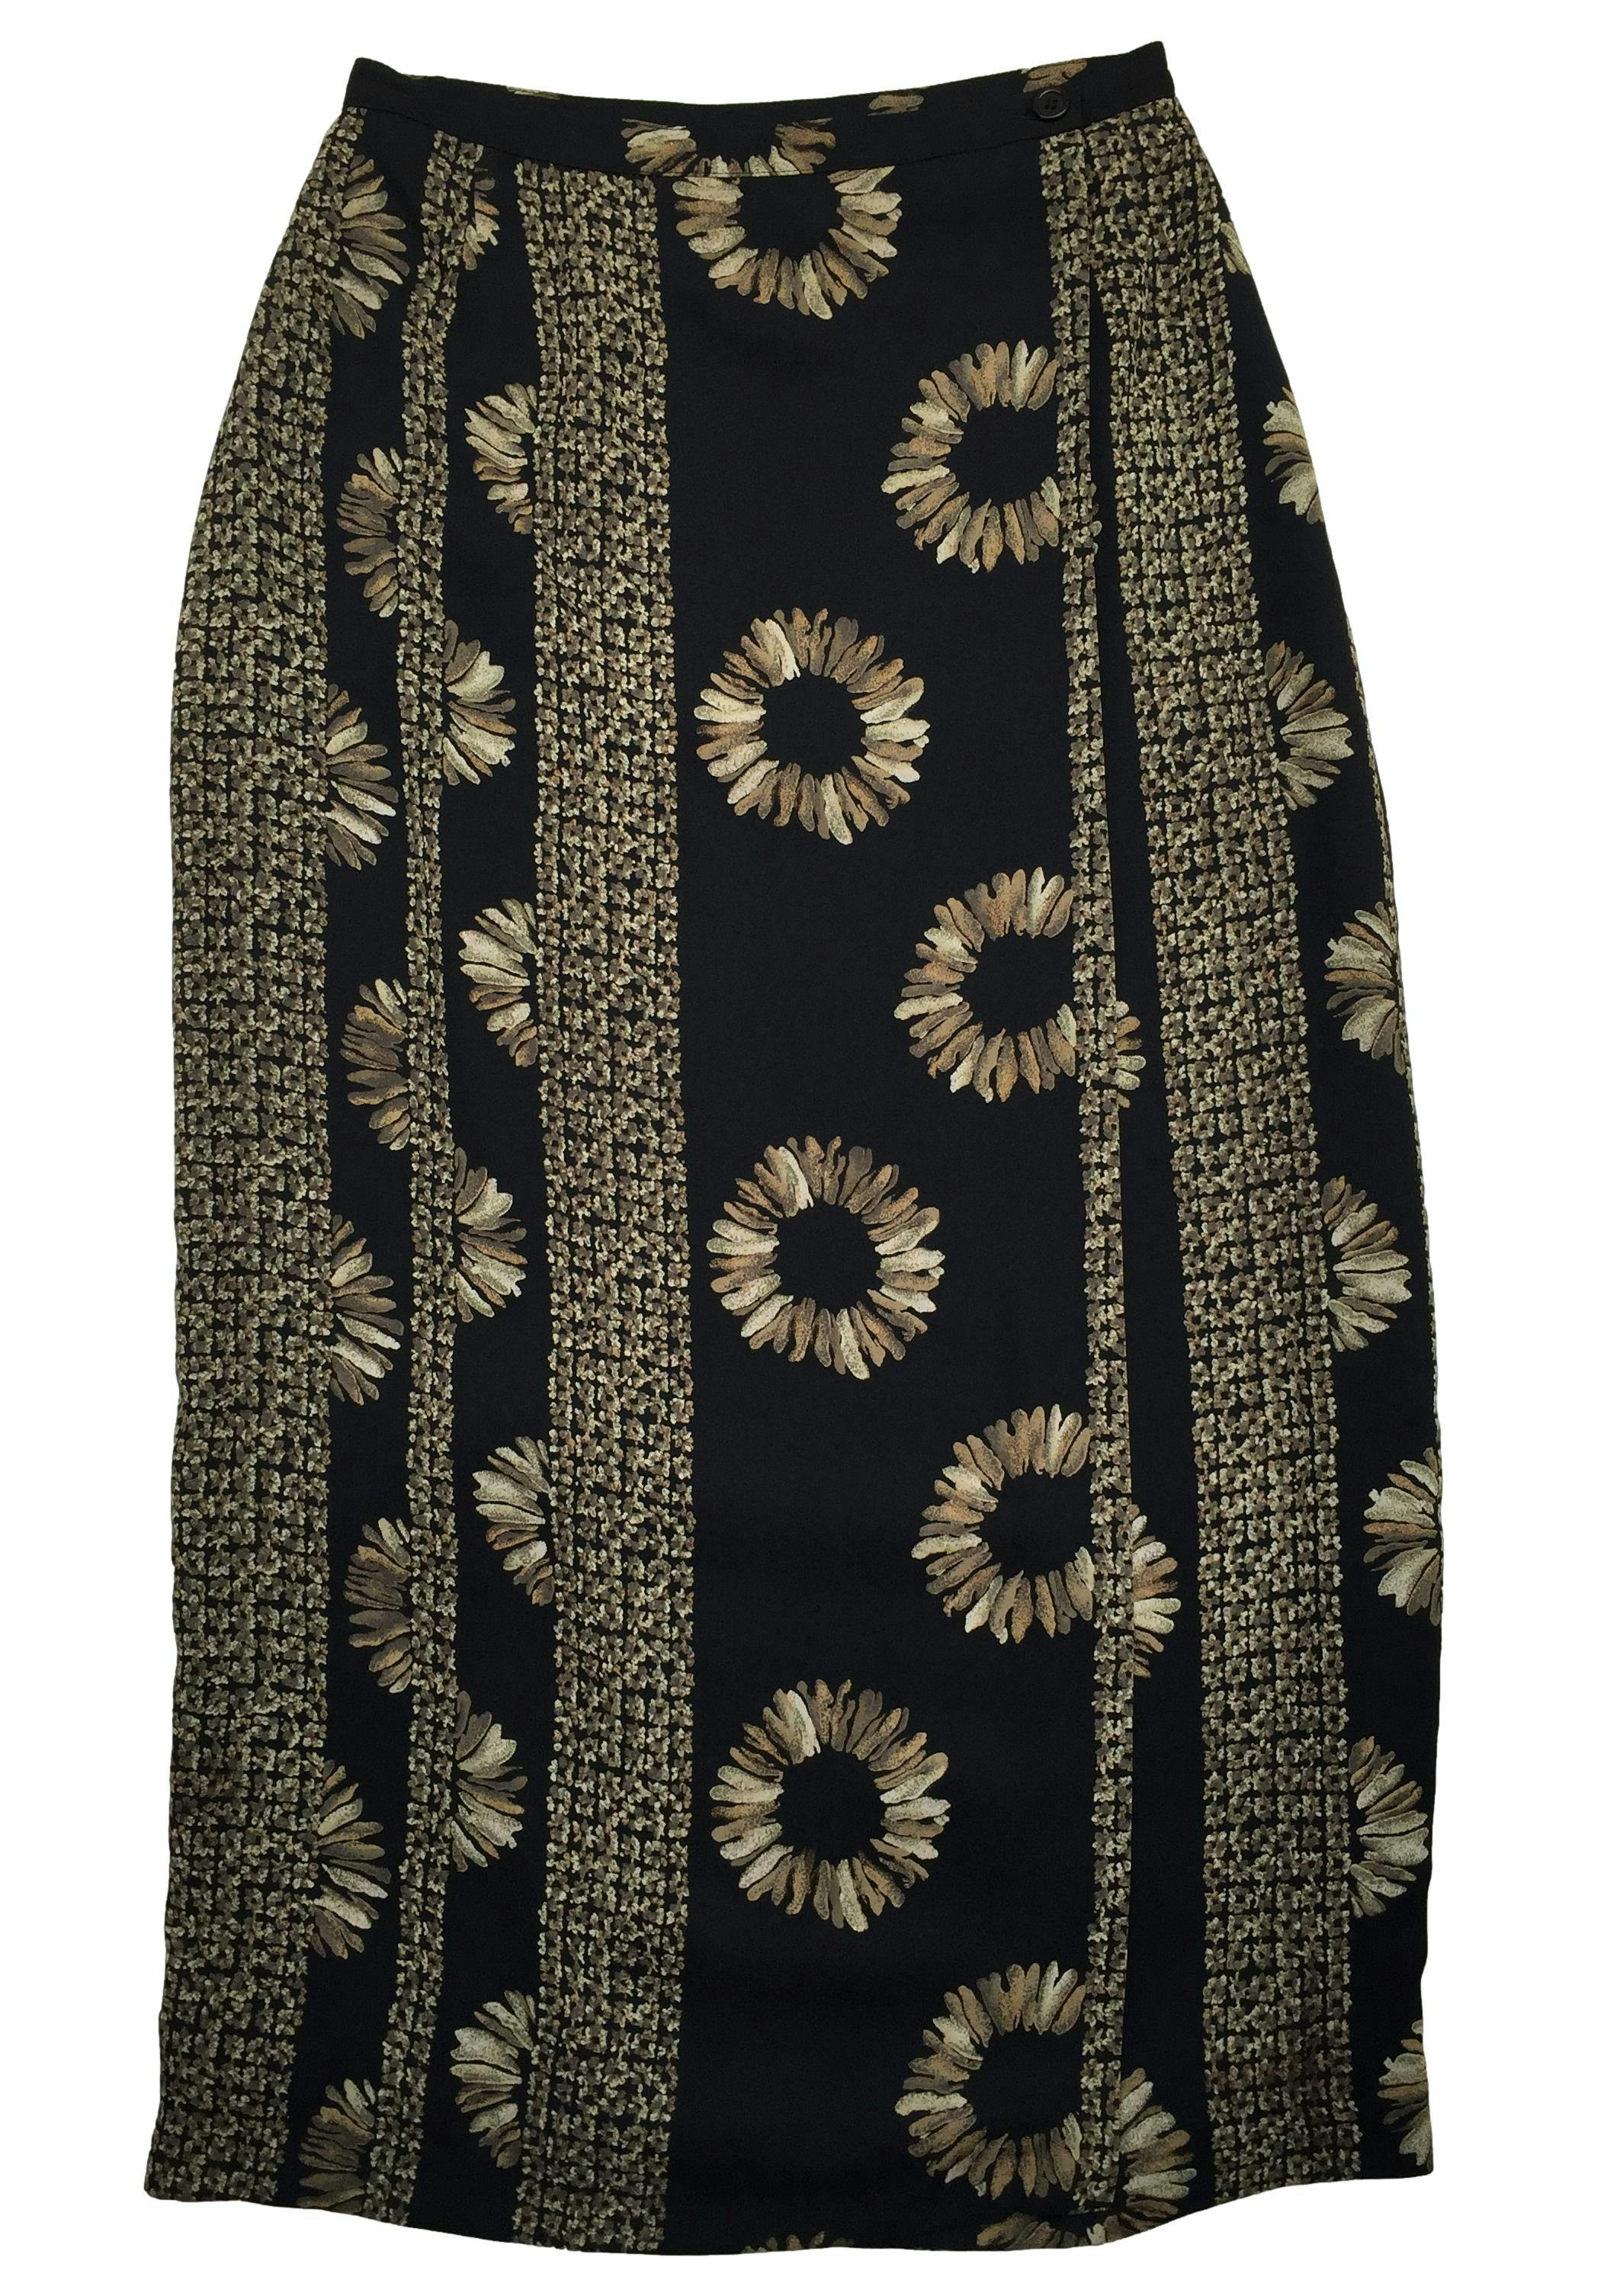 Falda larga vintage de gasa negra con flores, forrada, modelo cruzado con botones en pretina. Cintura 70cm Largo 90cm